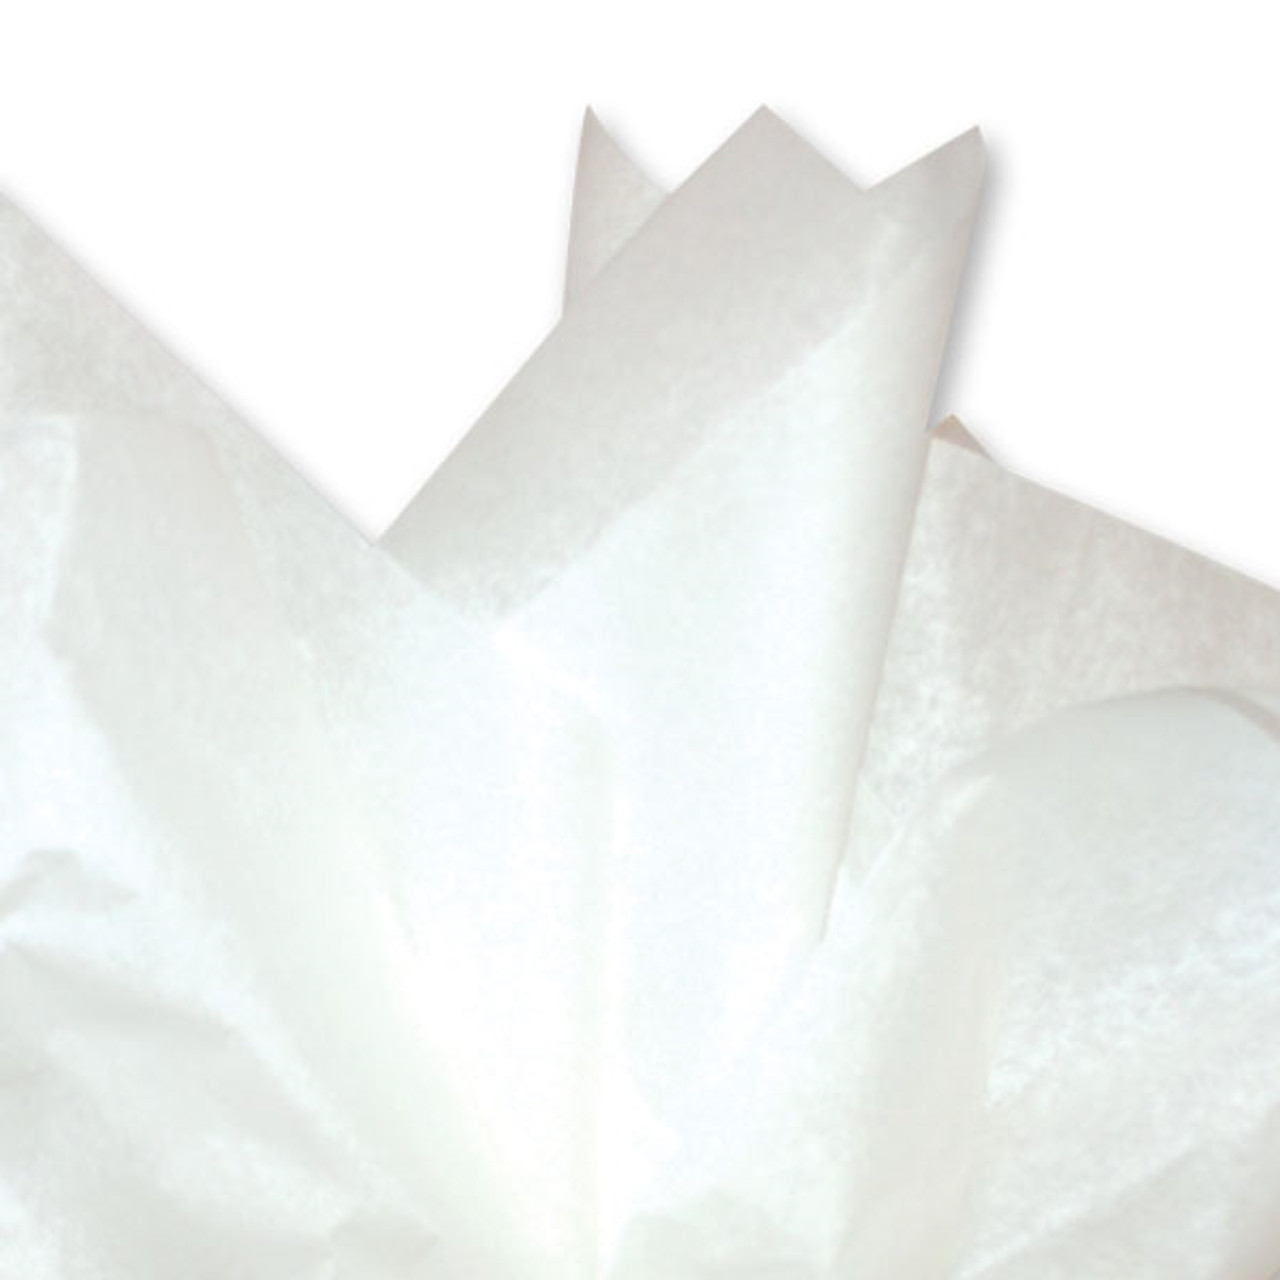 1 Pure White Tissue Kraft